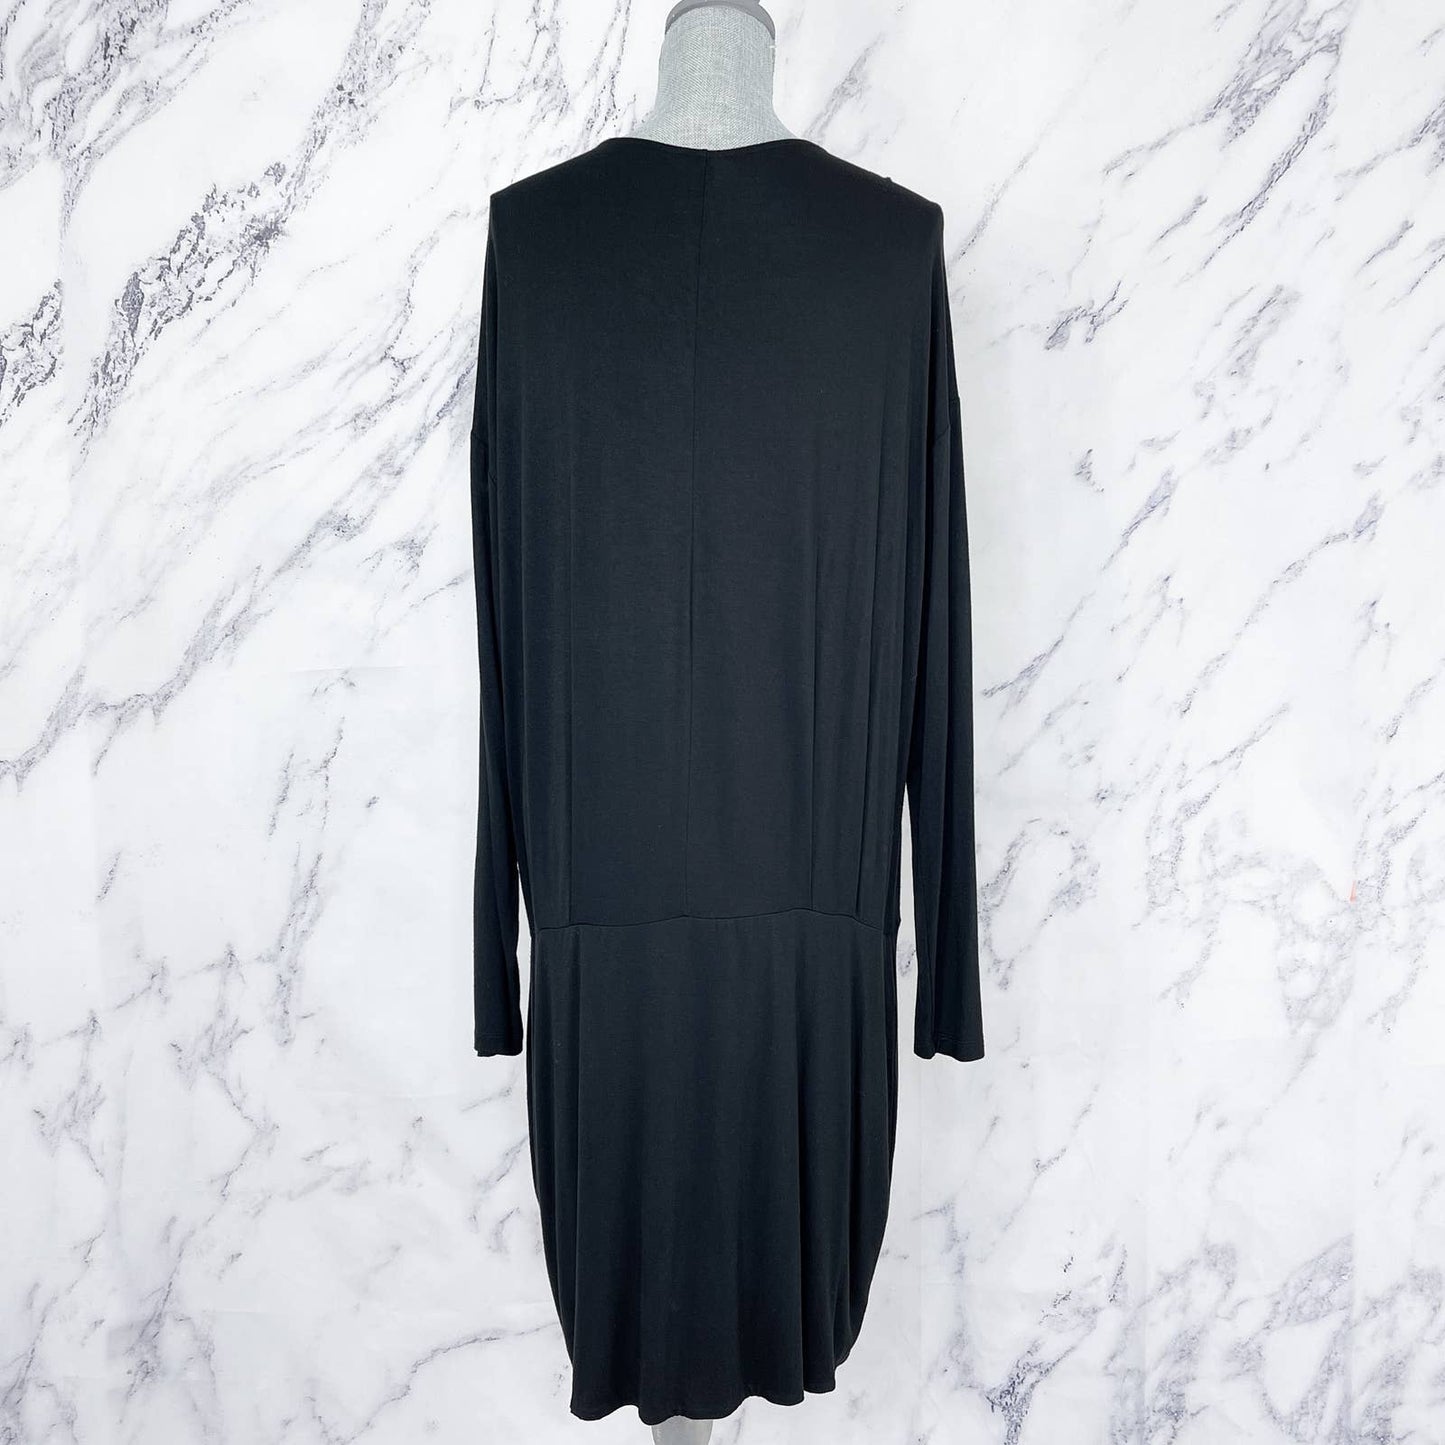 Banana Republic | Black Knit Long Sleeve Dress | Sz XL